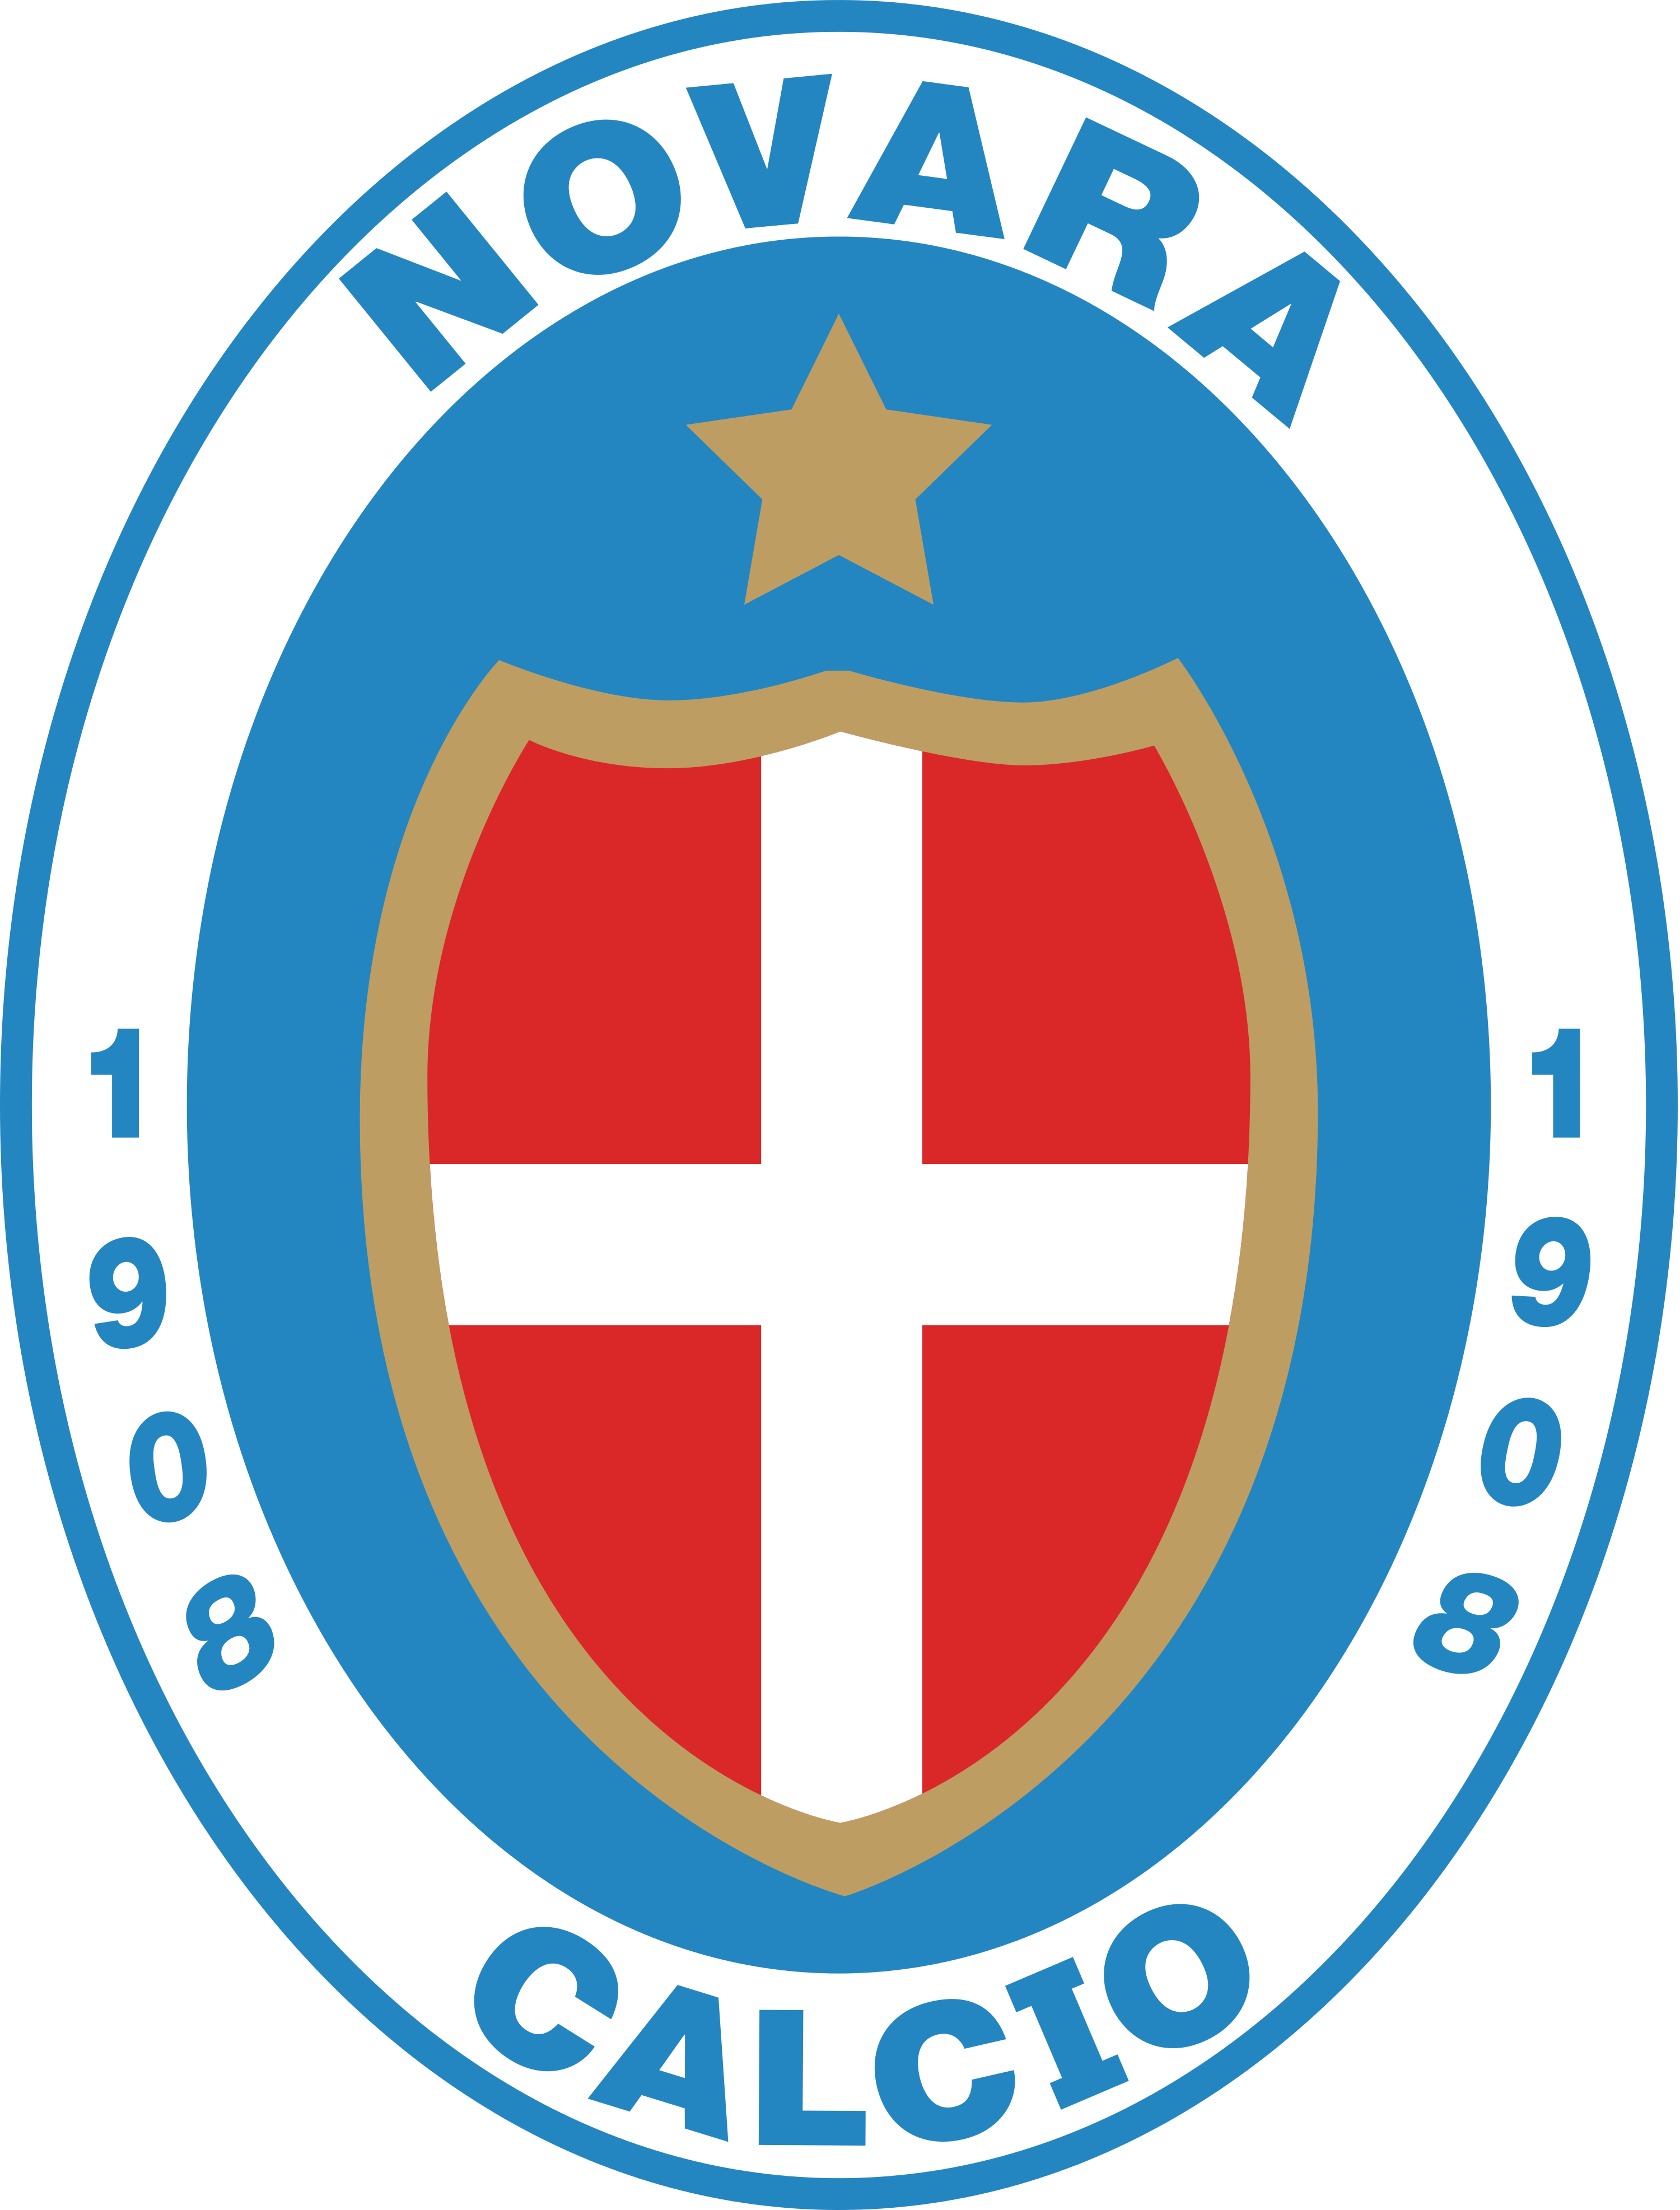 諾瓦拉足球俱樂部